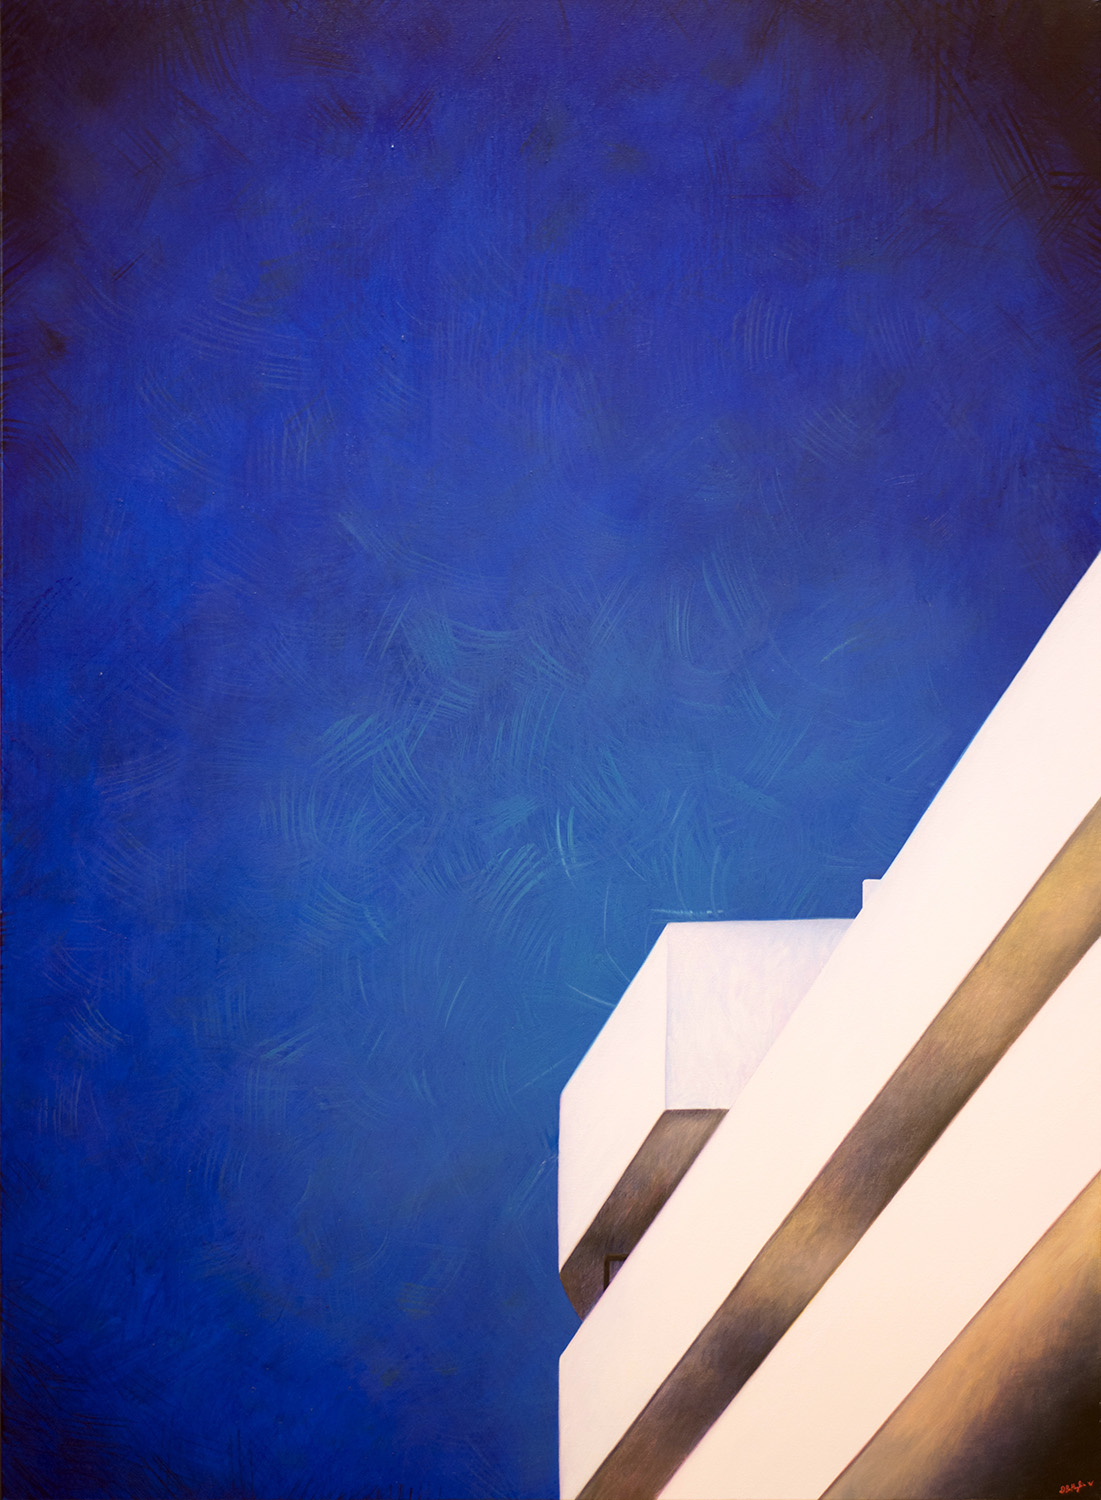 
'Blue Interlude'
(2016)
olio su tela,
100x73 cm
